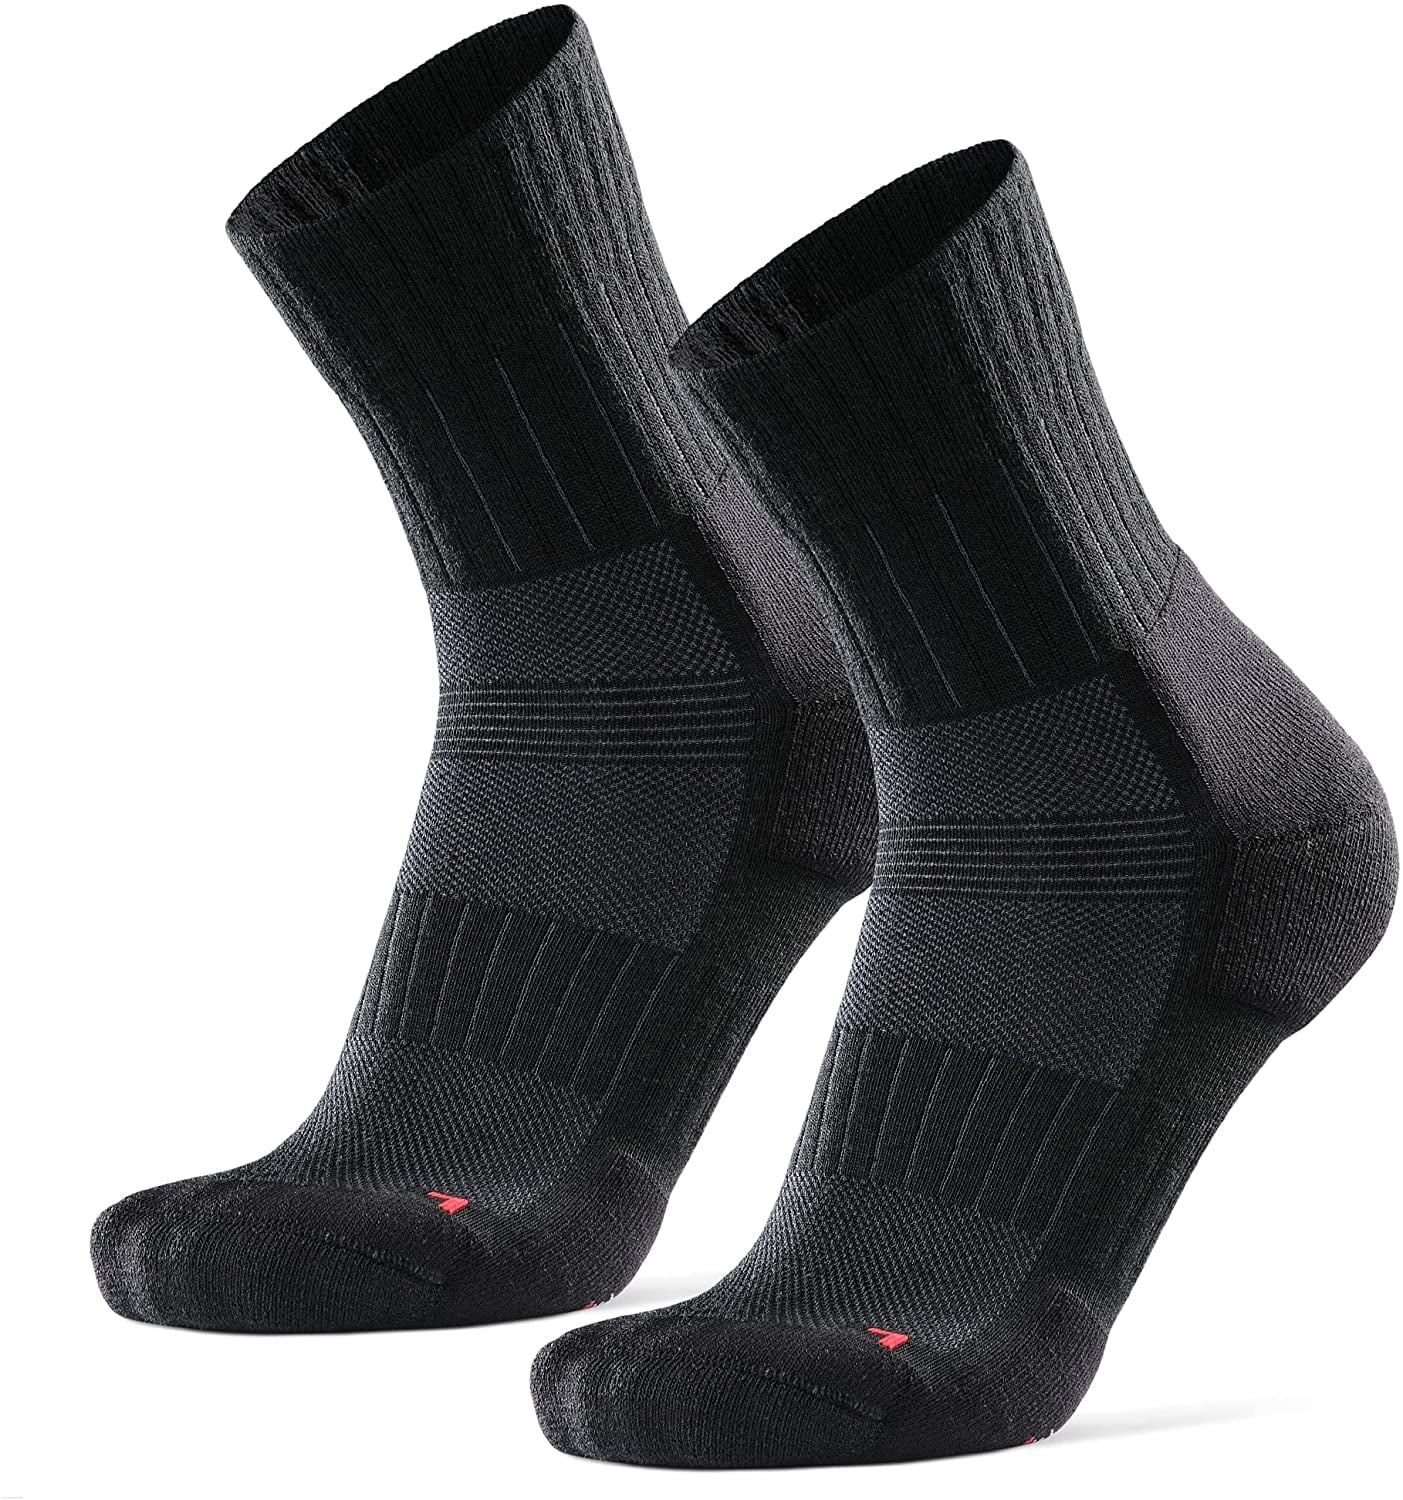 Anti-Blister Athletic Socks Long Distance Low-Cut Running Socks for Men & Women 